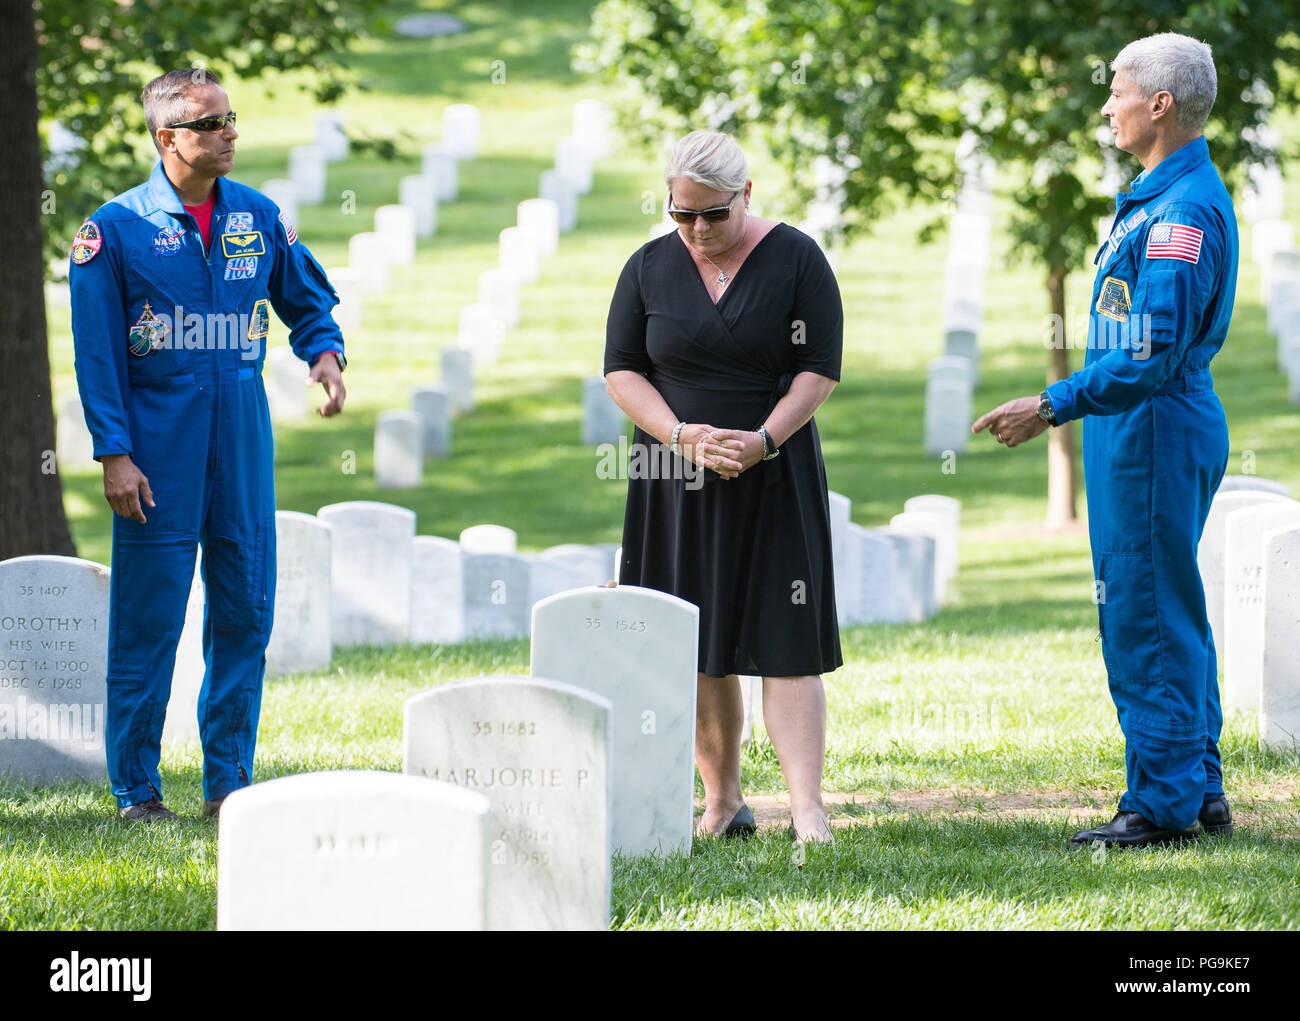 L'astronauta della NASA Joe Acaba, sinistra e Mark Vande Hei, destra, guarda come Julie Vande Hei, moglie di Mark, prende un momento dopo il posizionamento di un fiore presso il recinto di ex astronauta e U.S. Il senatore John Glenn, Venerdì, 15 giugno 2018 presso il Cimitero di Arlington in Arlington, Virginia Foto Stock